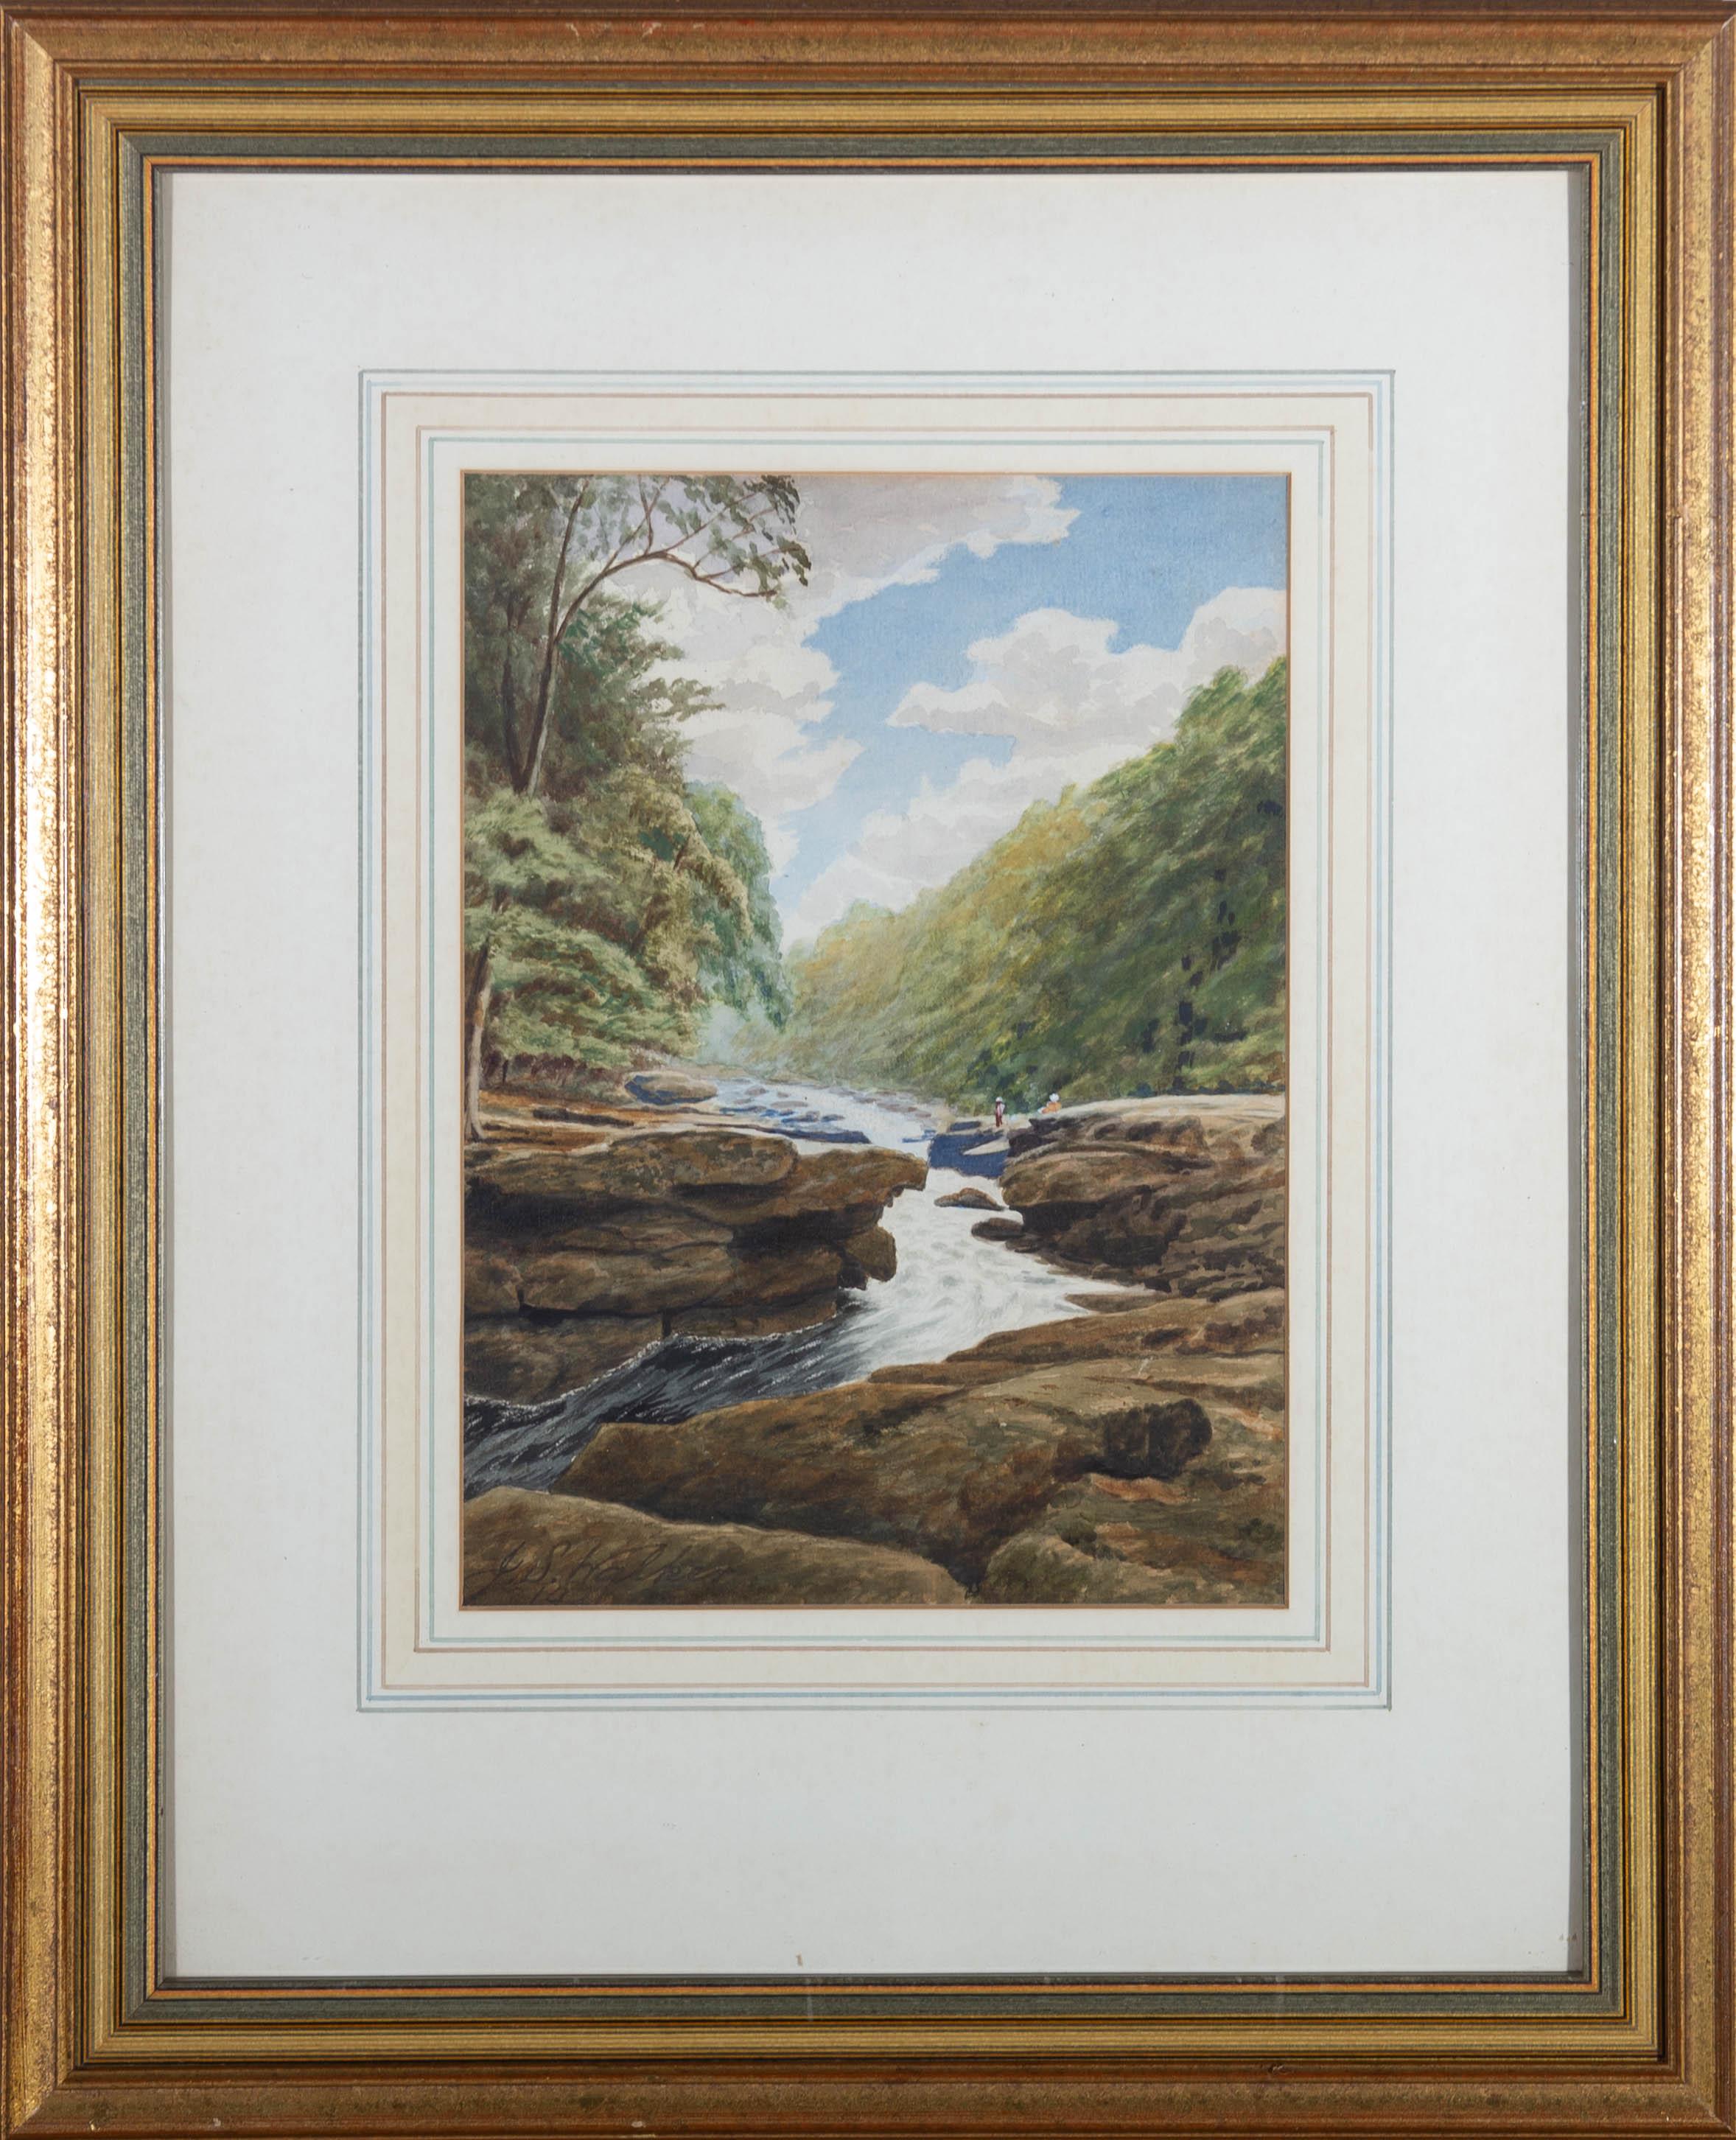 Une charmante scène d'aquarelle montrant la puissance des rivières de la nature comparée aux petits personnages assis pour la contempler. On peut les apercevoir dans ce vaste paysage où les arbres les surplombent et où l'eau coule à flots en